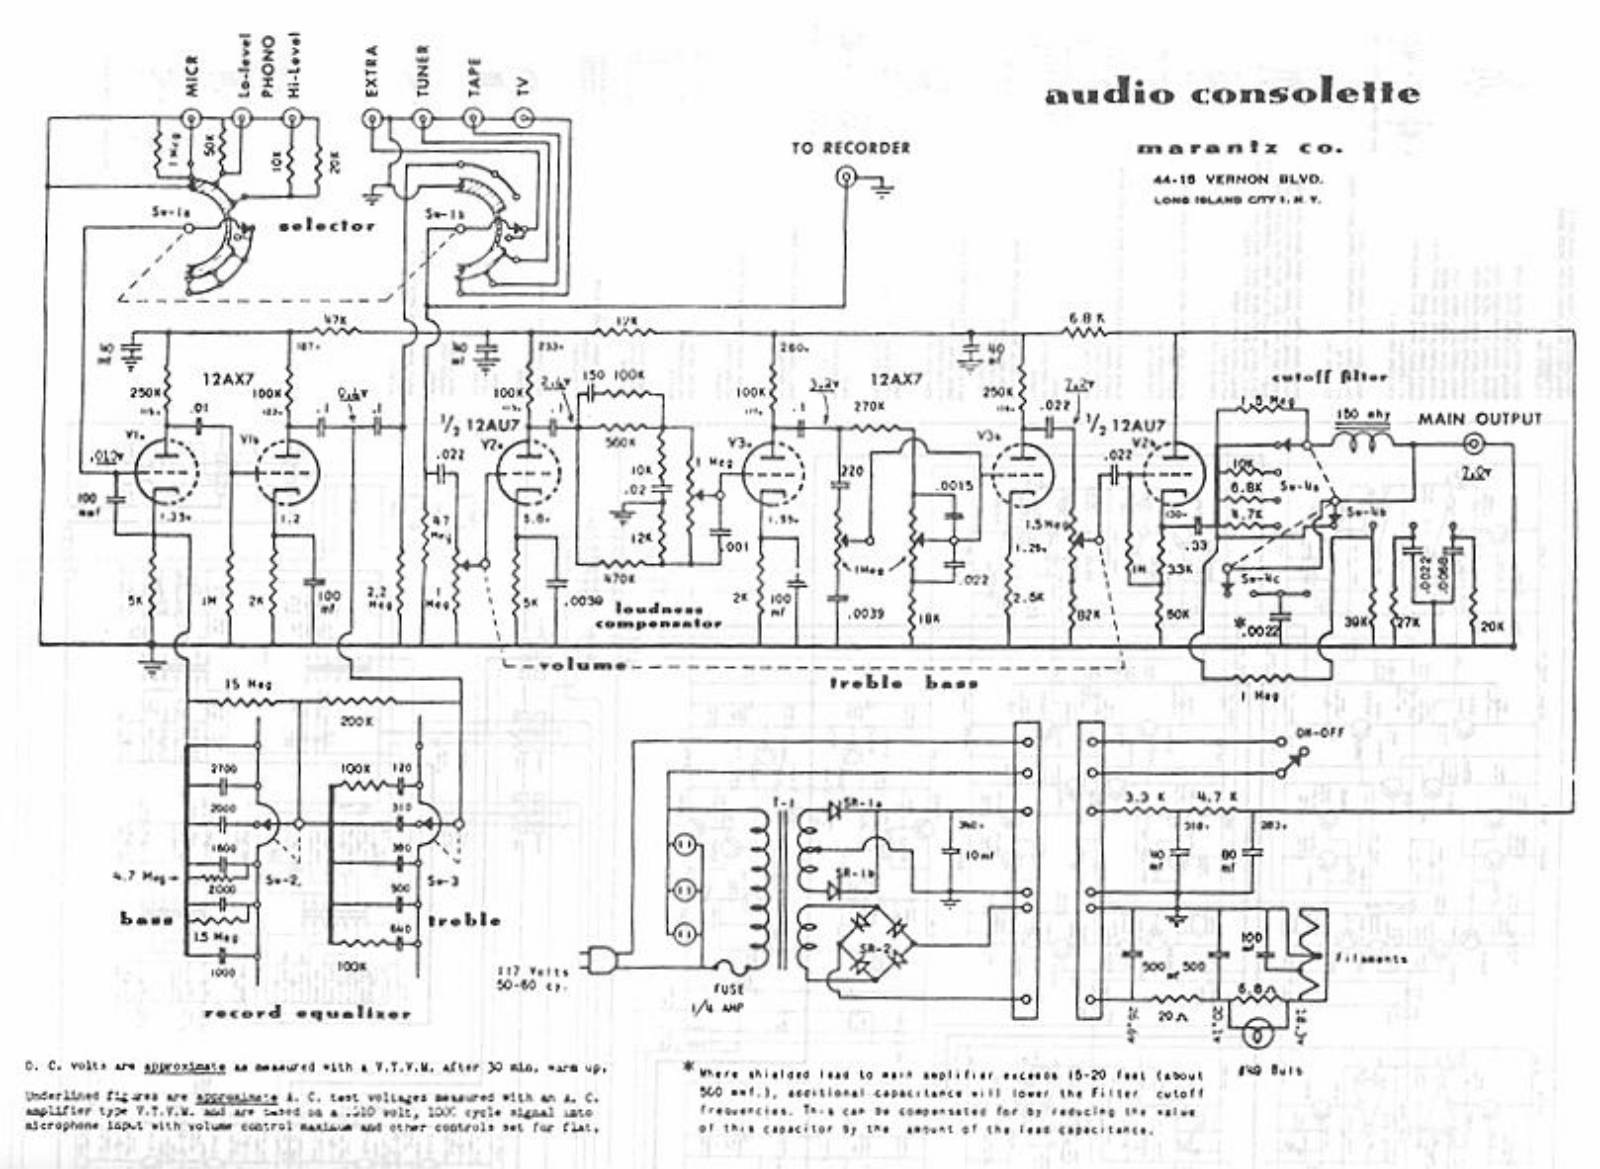 Marantz Audio-Consolette Schematic